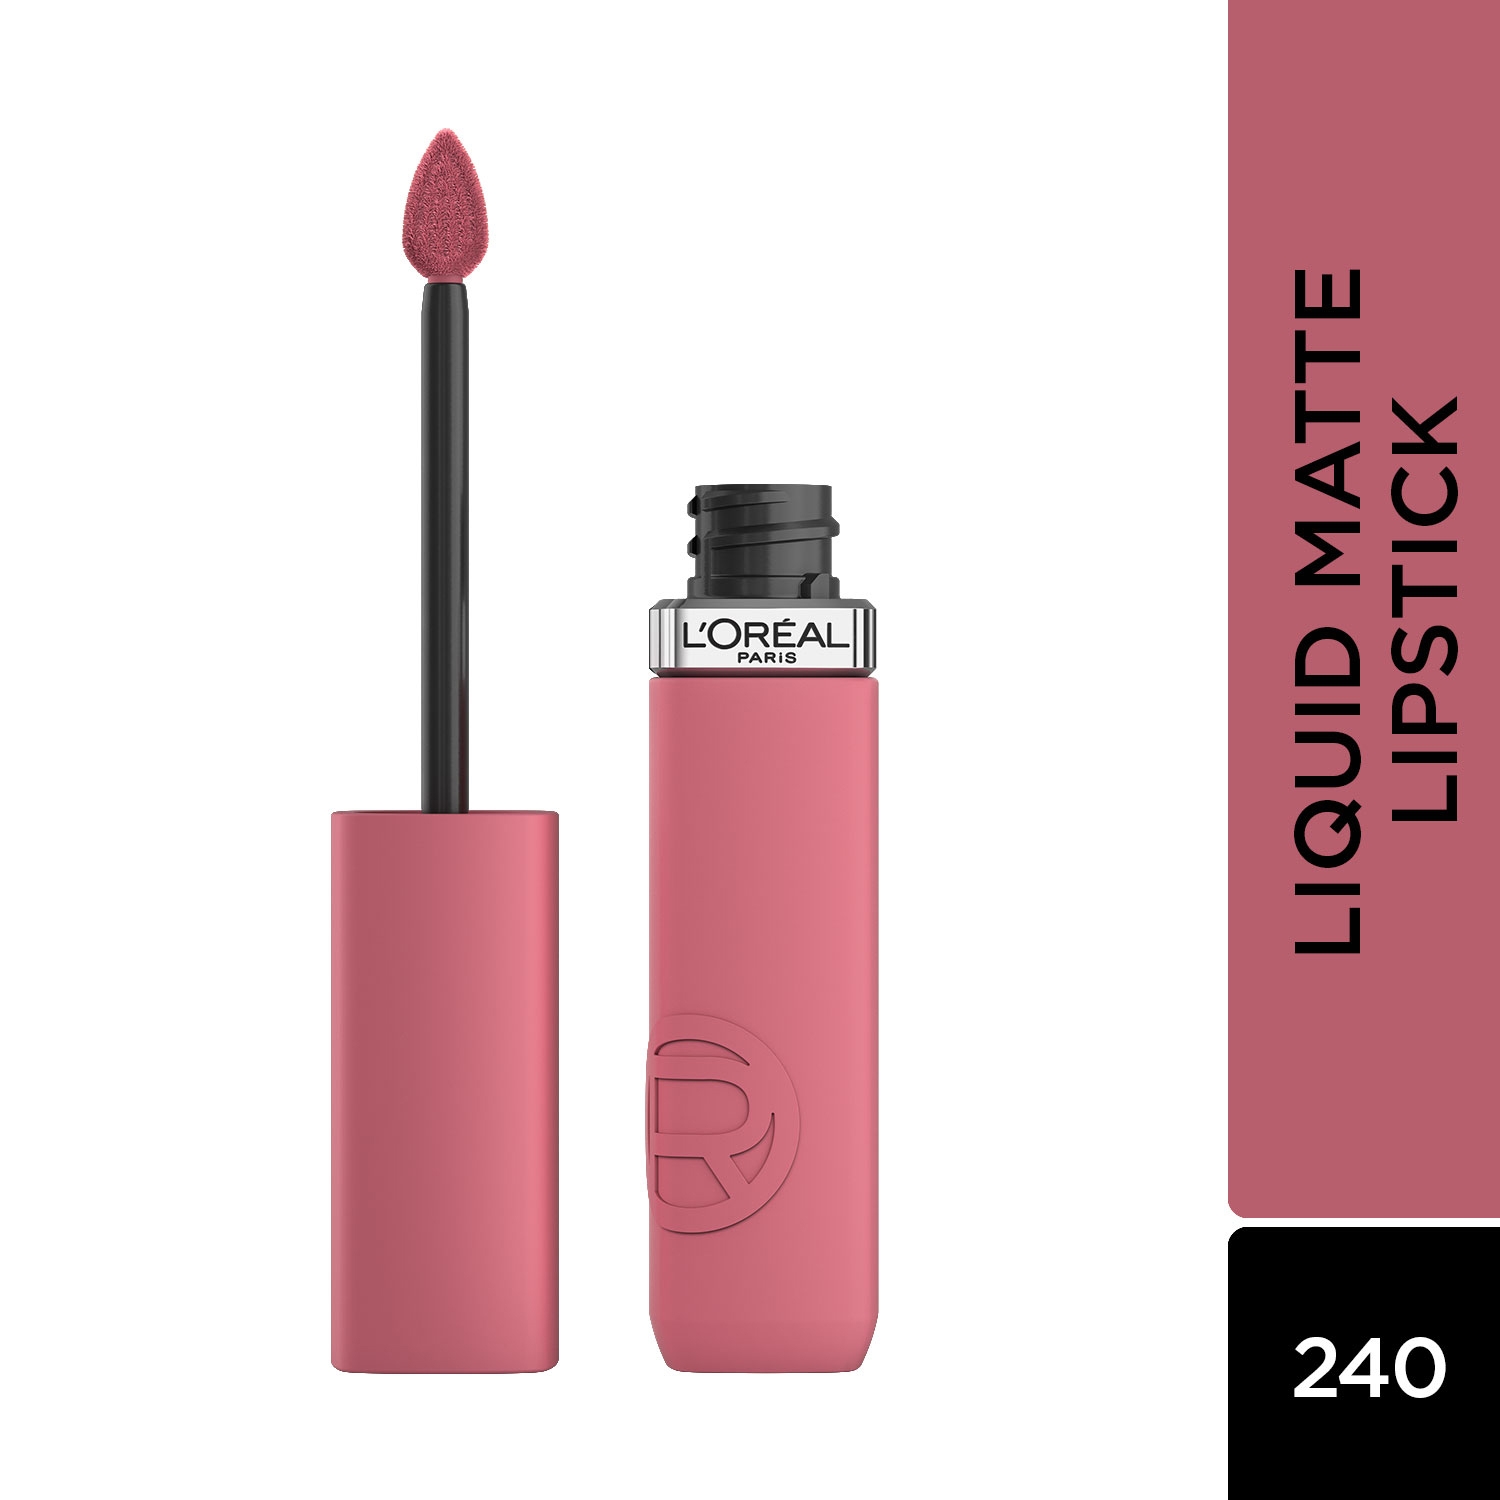 L'Oreal Paris | L'Oreal Paris Infallible Matte Resistance Liquid Lipstick - 240 Road Tripping (5ml)